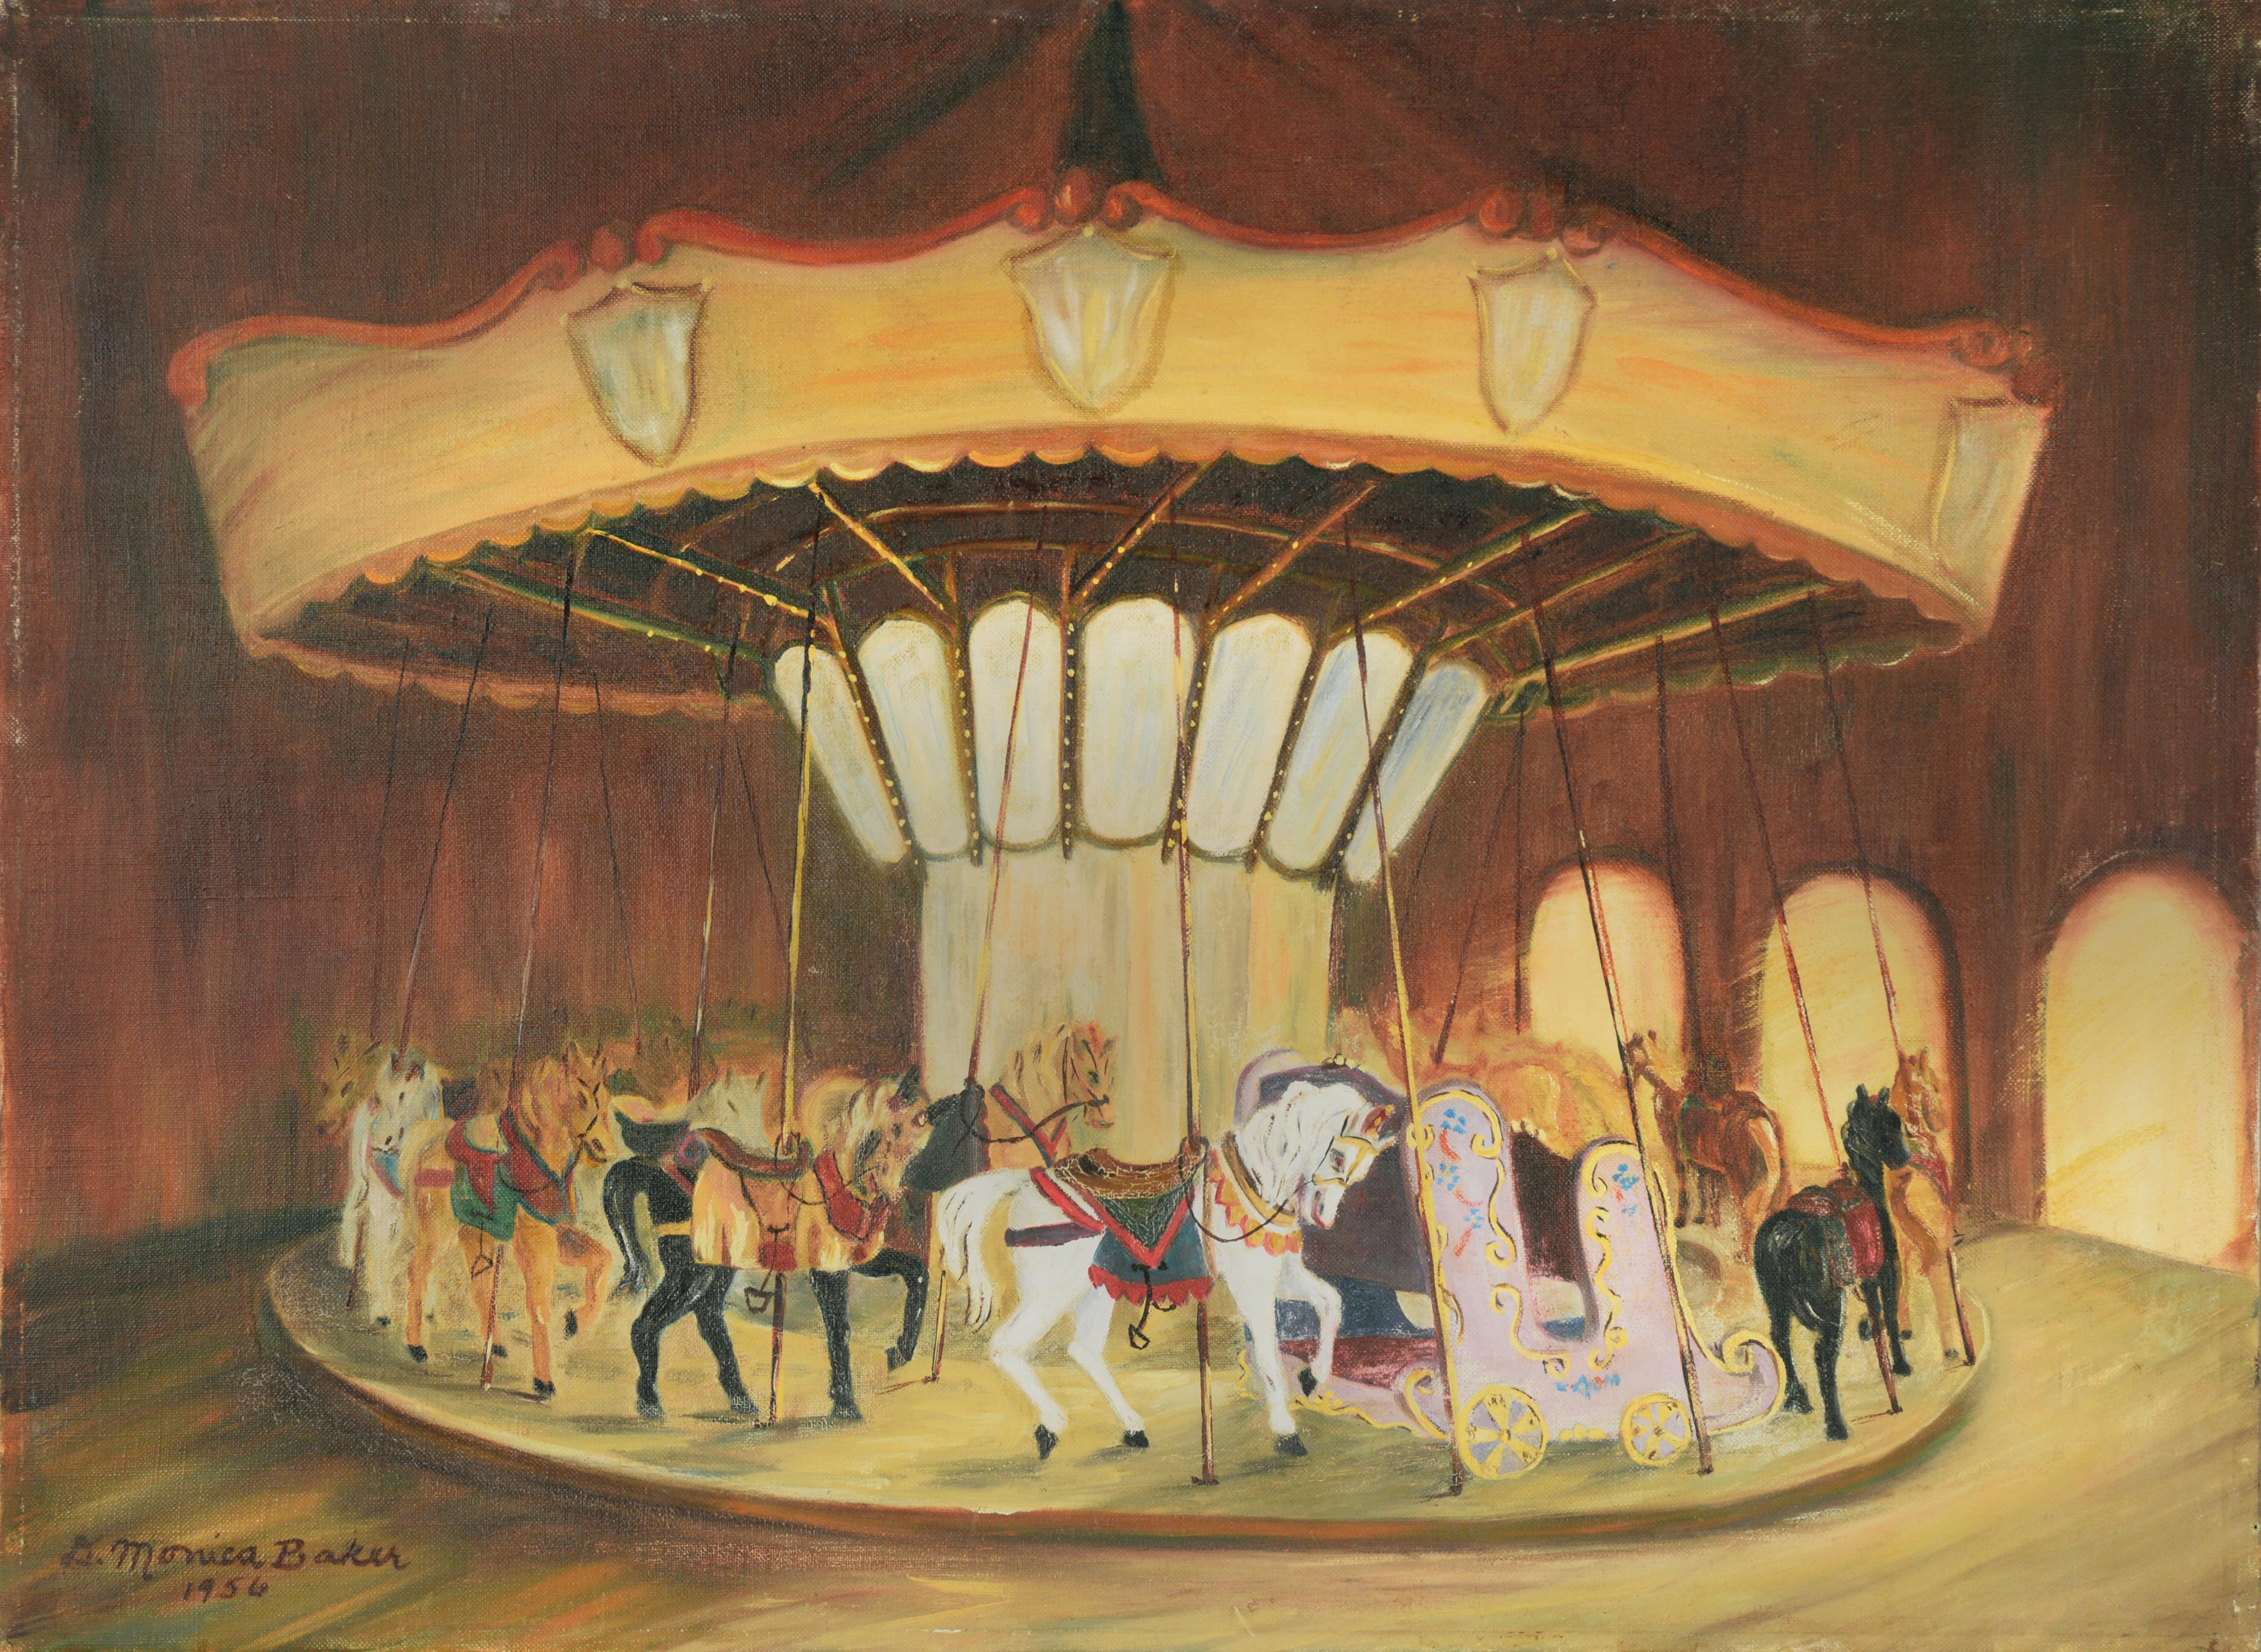 Figurative Painting Monica Baker - Carousel à cheval blanc, 1956 - Peinture à l'huile originale sur lin